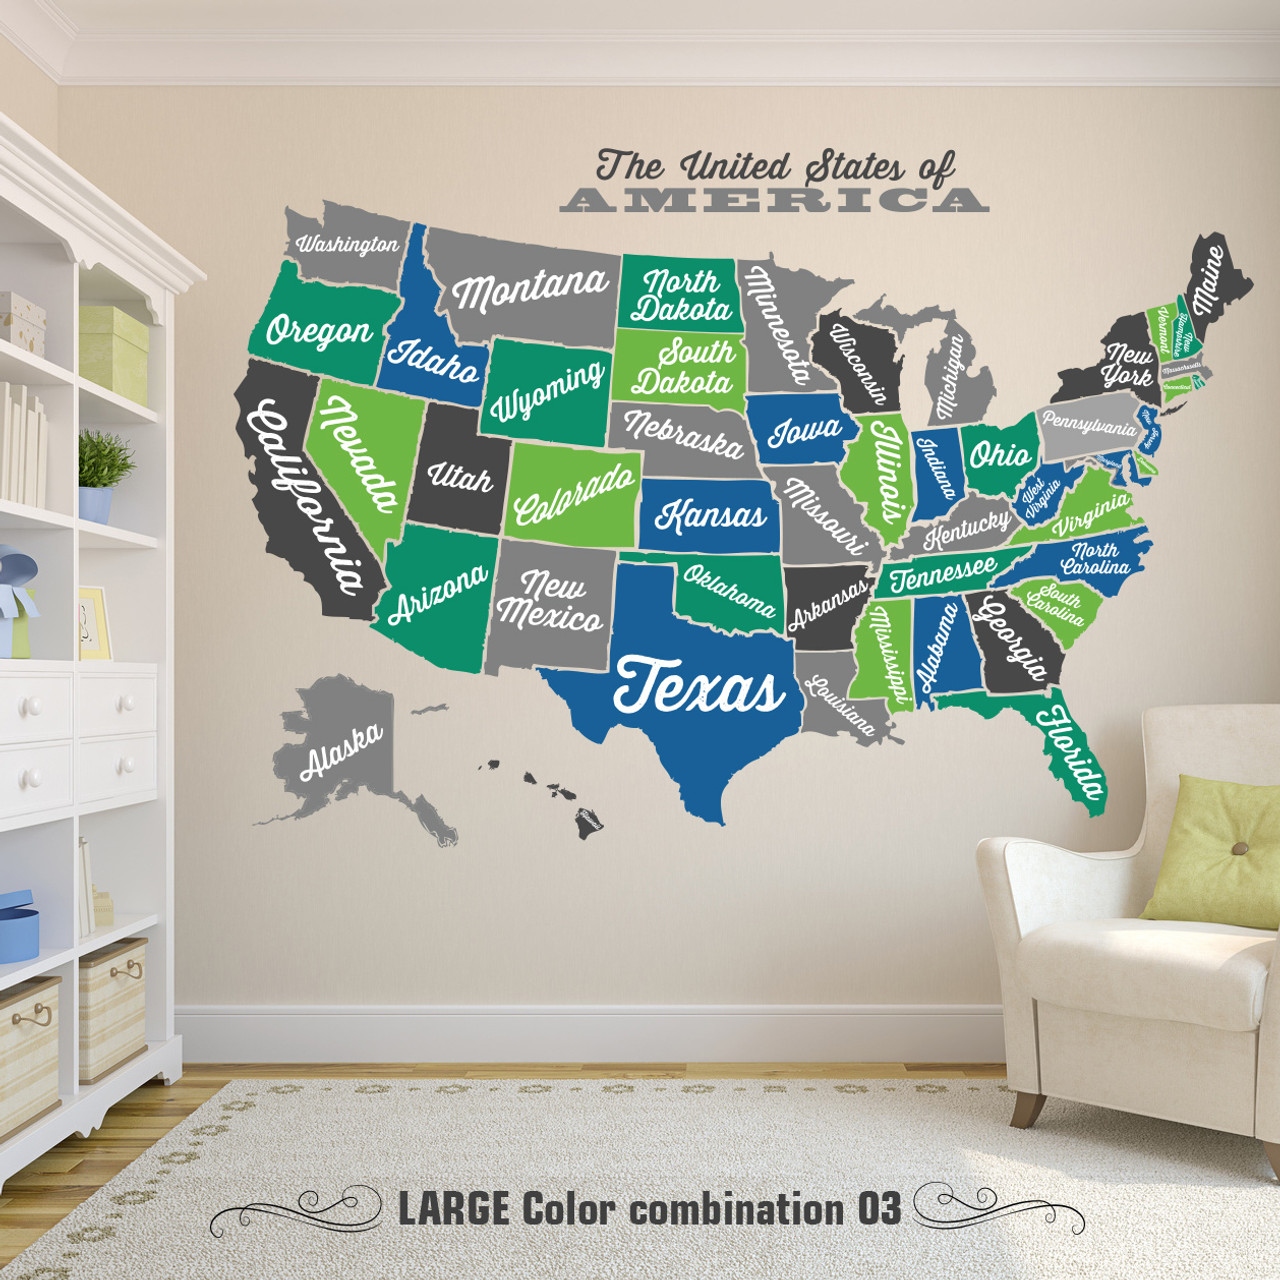 Wallies Wall Decals, U.S. Map Wall Sticker : : Home Improvement